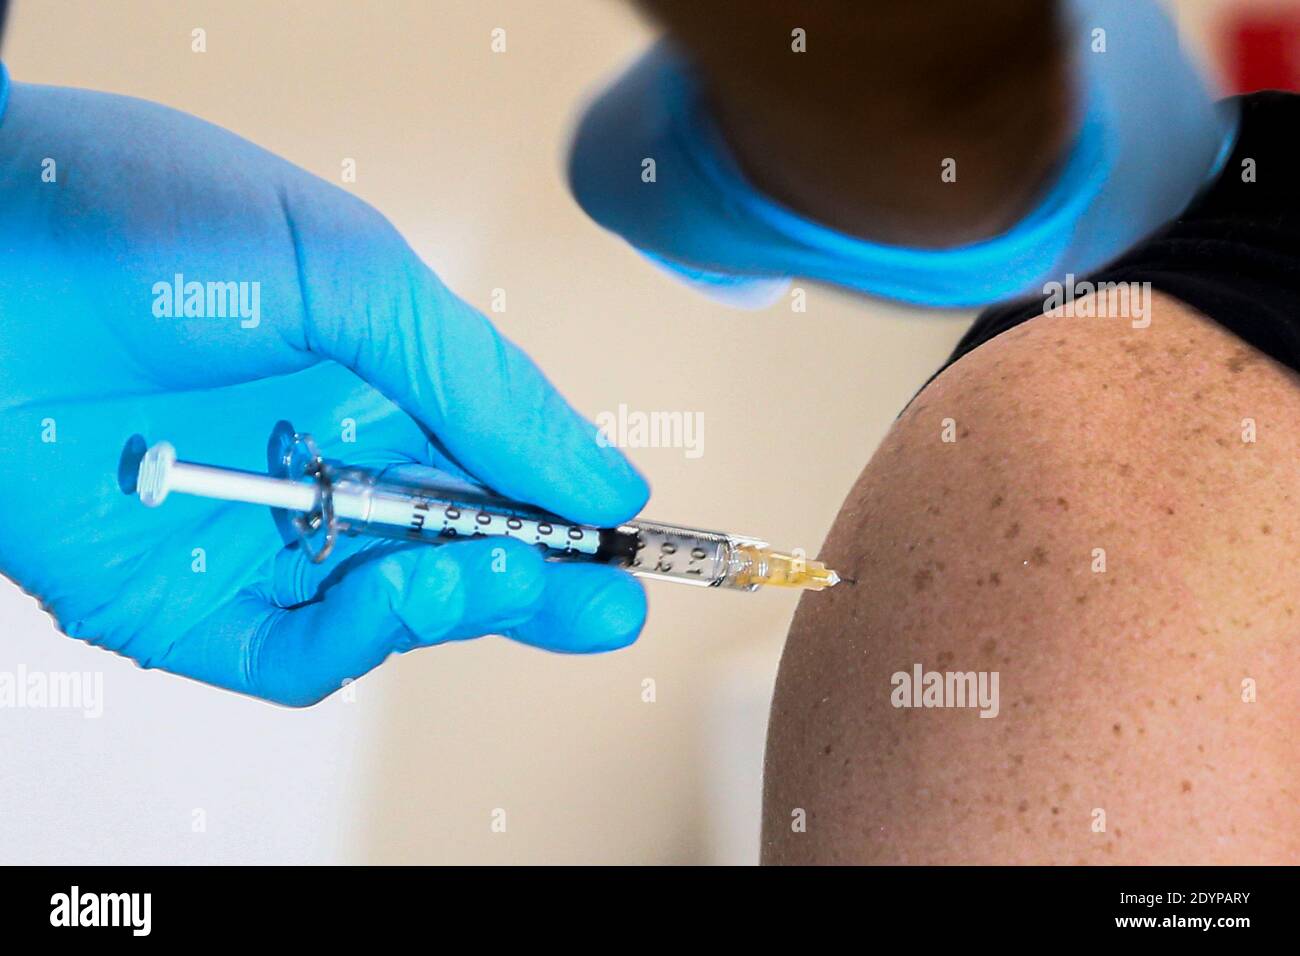 Detalle de la inyección de la vacuna contra COVID-19. Día de la vacuna en Italia, las primeras inyecciones de la vacuna Pfizer se administran a los trabajadores de la salud al mismo tiempo. Foto de stock